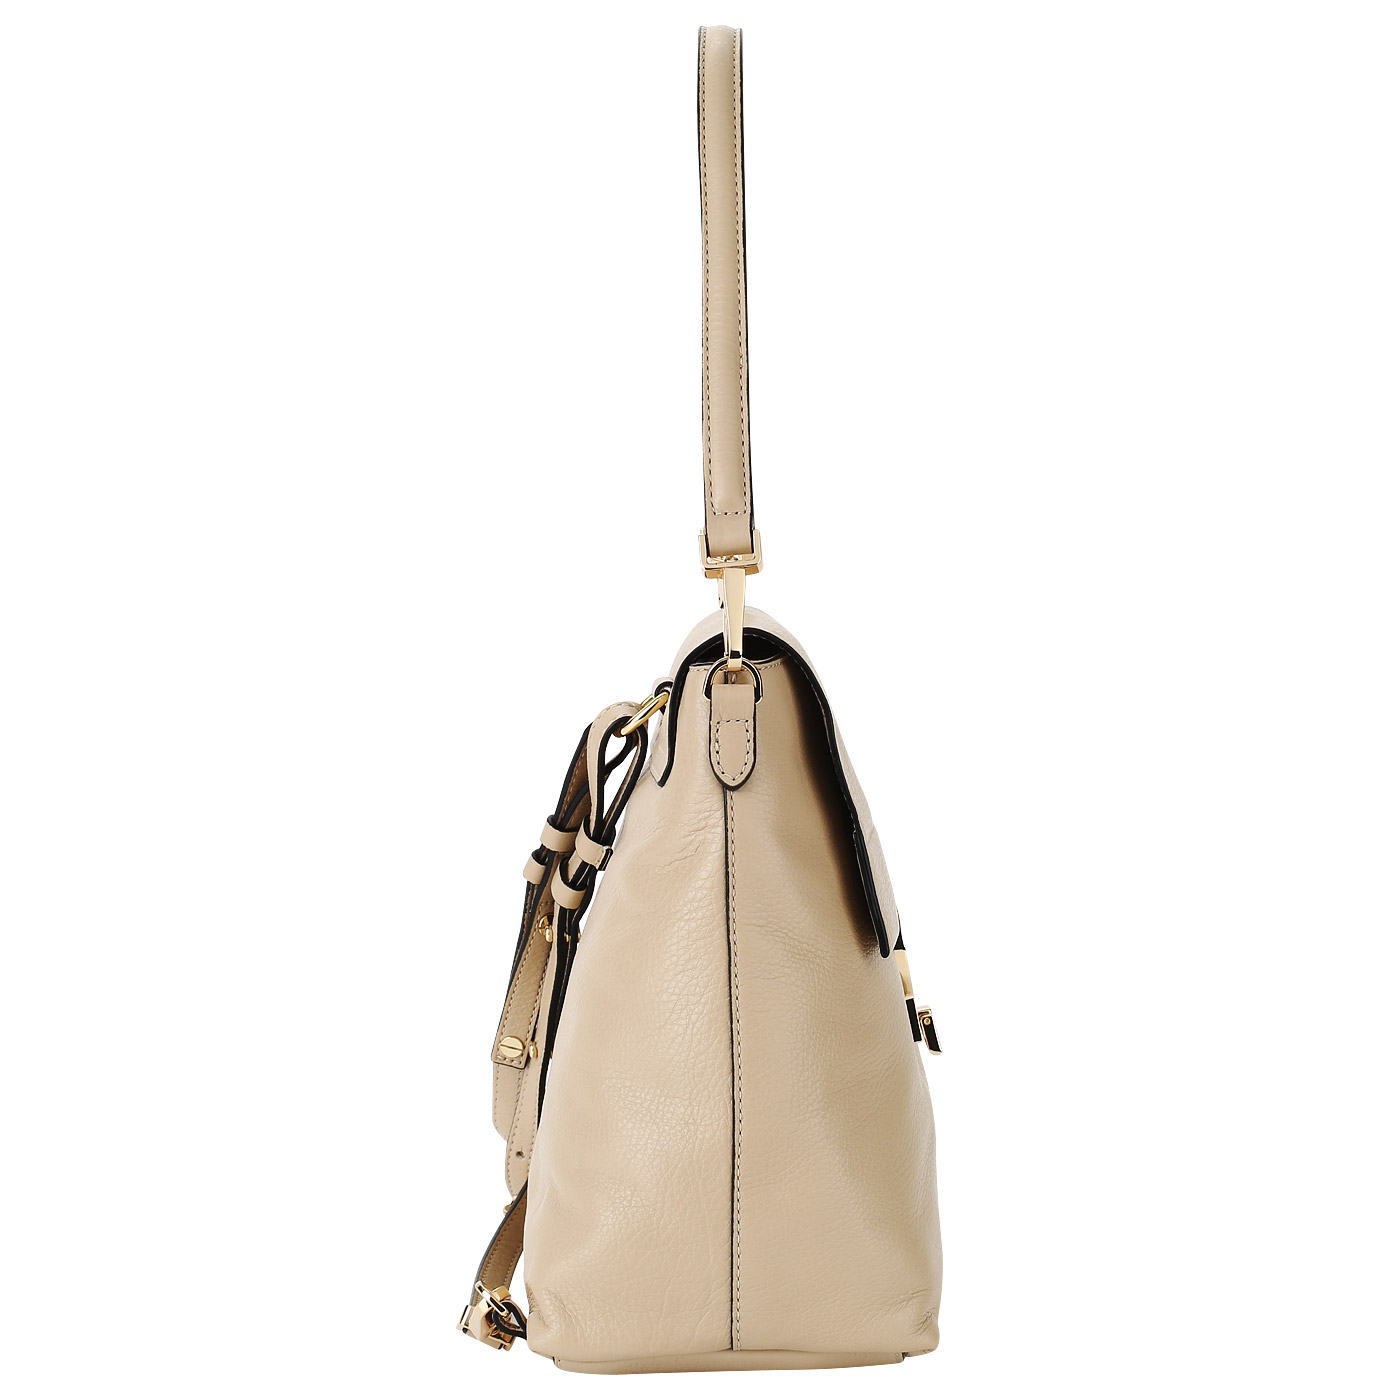 Женский кожаный рюкзак со съемной ручкой Coccinelle Arlettis